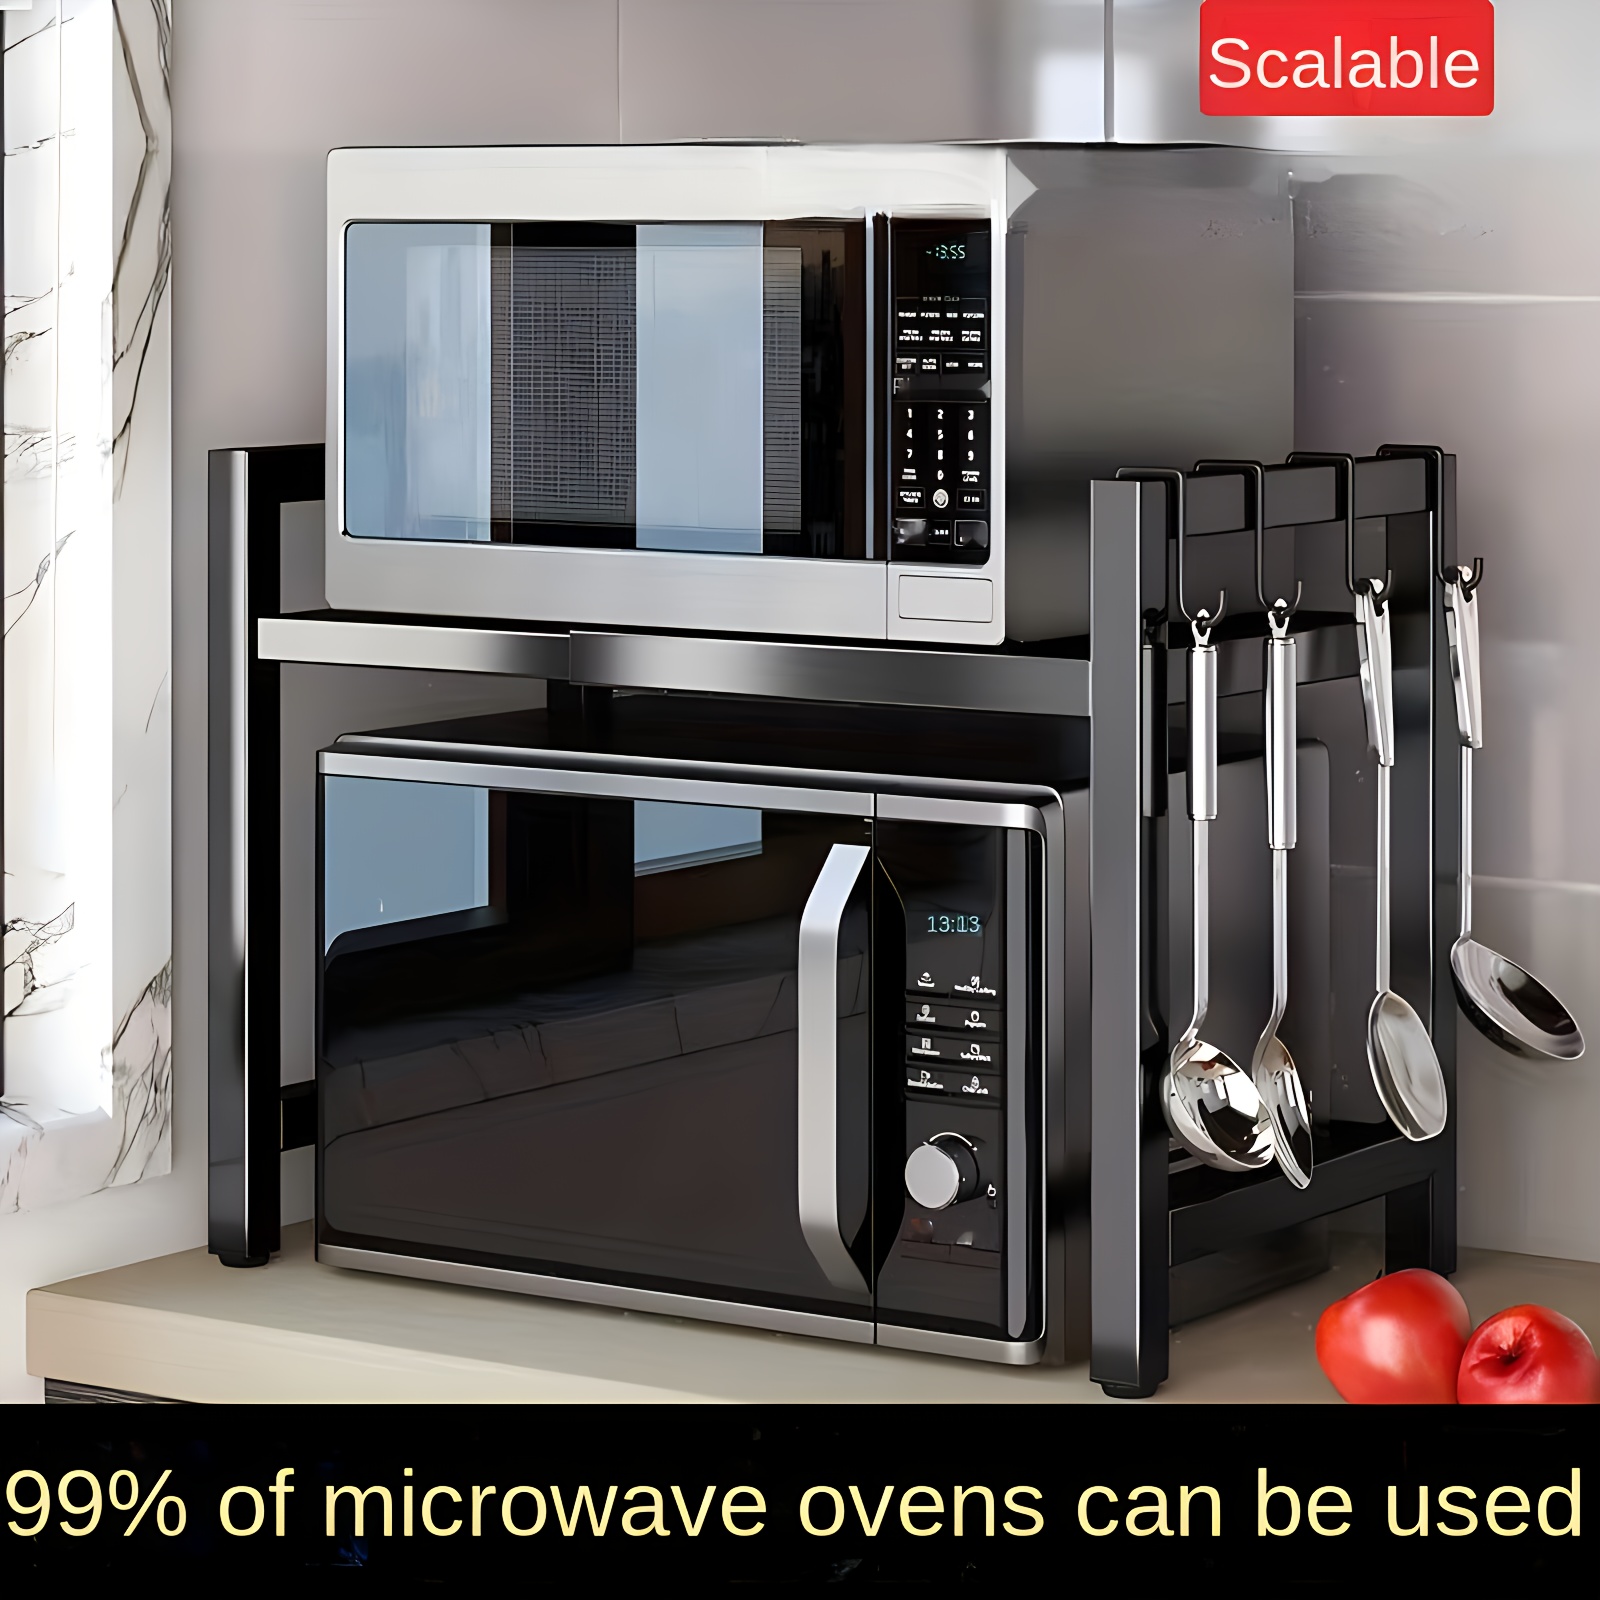 Bandeja extensible universal para hornos y cocinas.